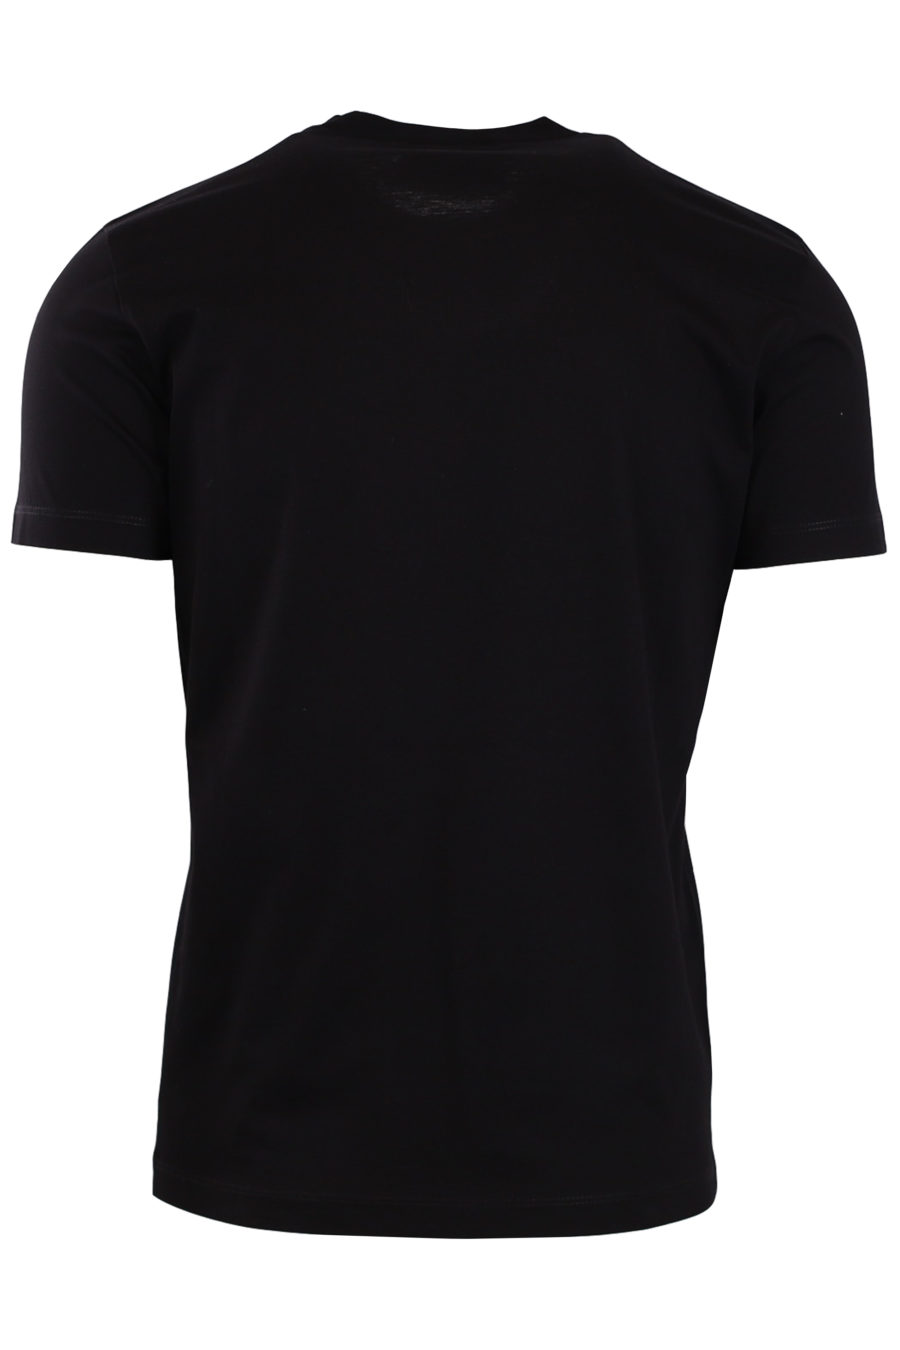 Camiseta negra con logotipo "Icon" - adf7e8faf1b9f721db89d12999282605e15766a5